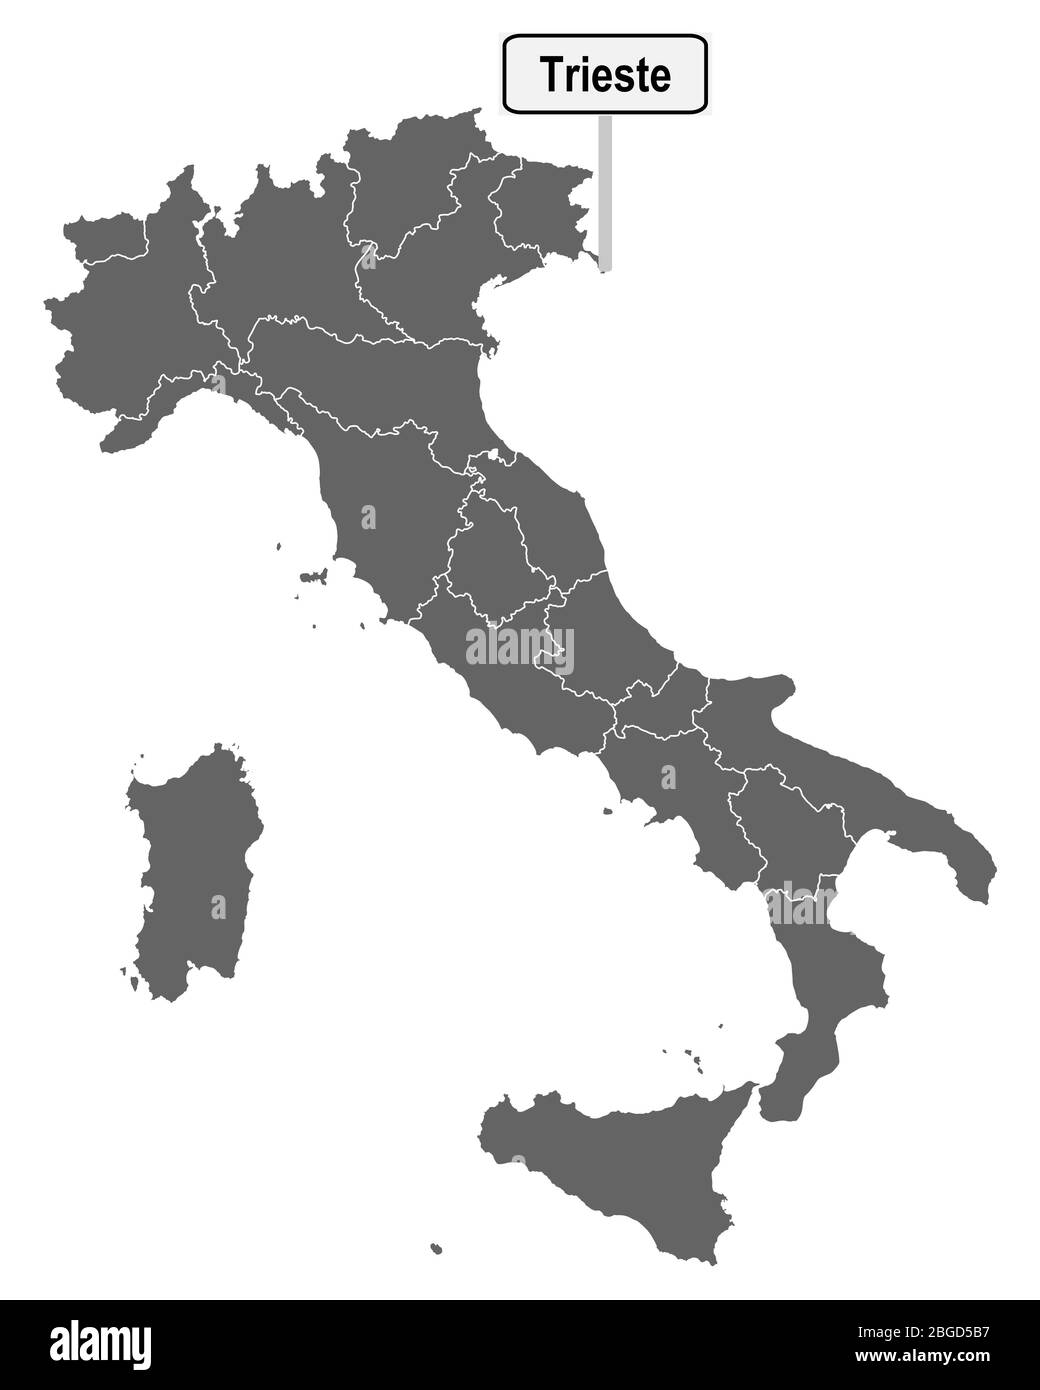 Mapa de Italia con señal de Trieste Foto de stock